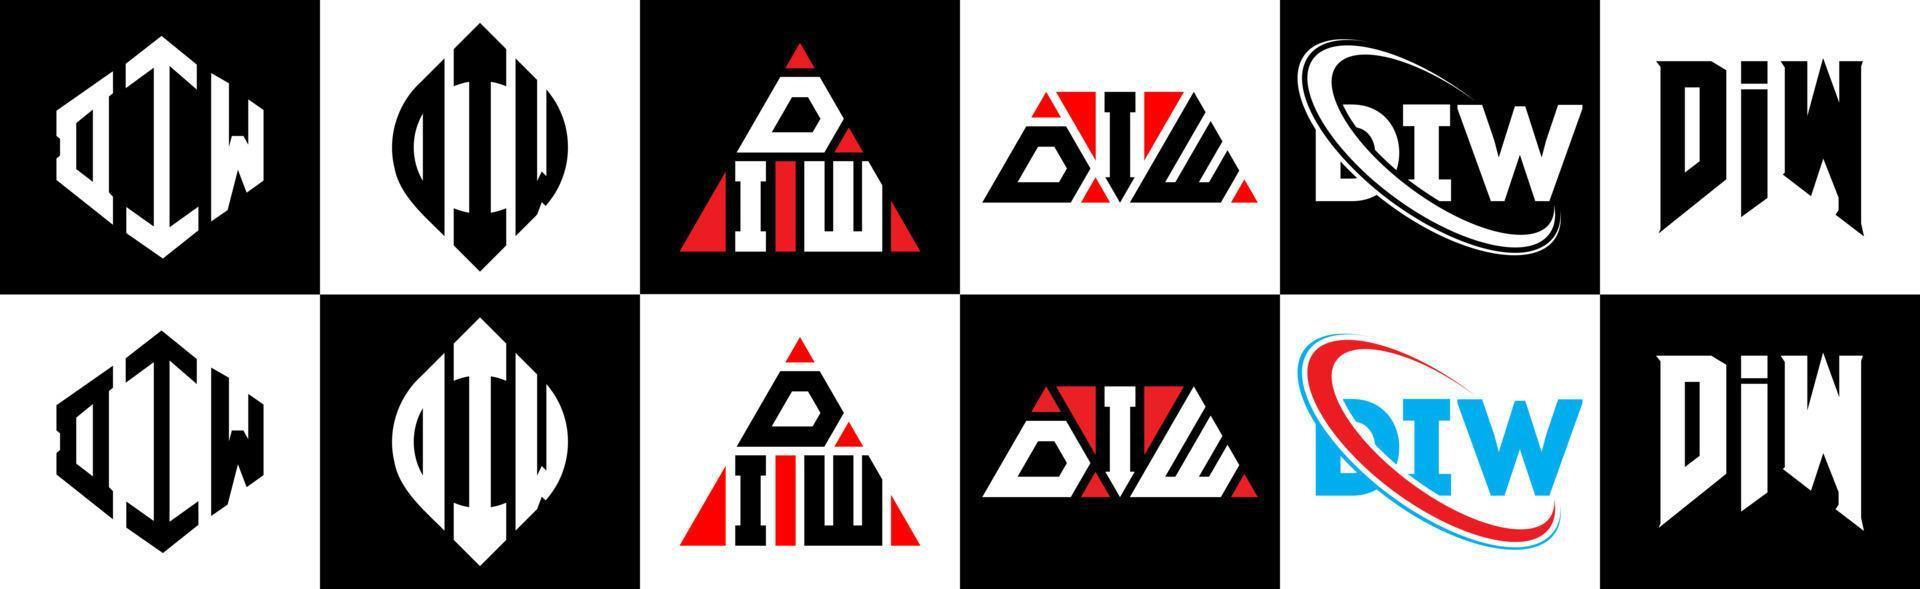 création de logo de lettre diw en six styles. diw polygone, cercle, triangle, hexagone, style plat et simple avec logo de lettre de variation de couleur noir et blanc dans un plan de travail. diw logo minimaliste et classique vecteur